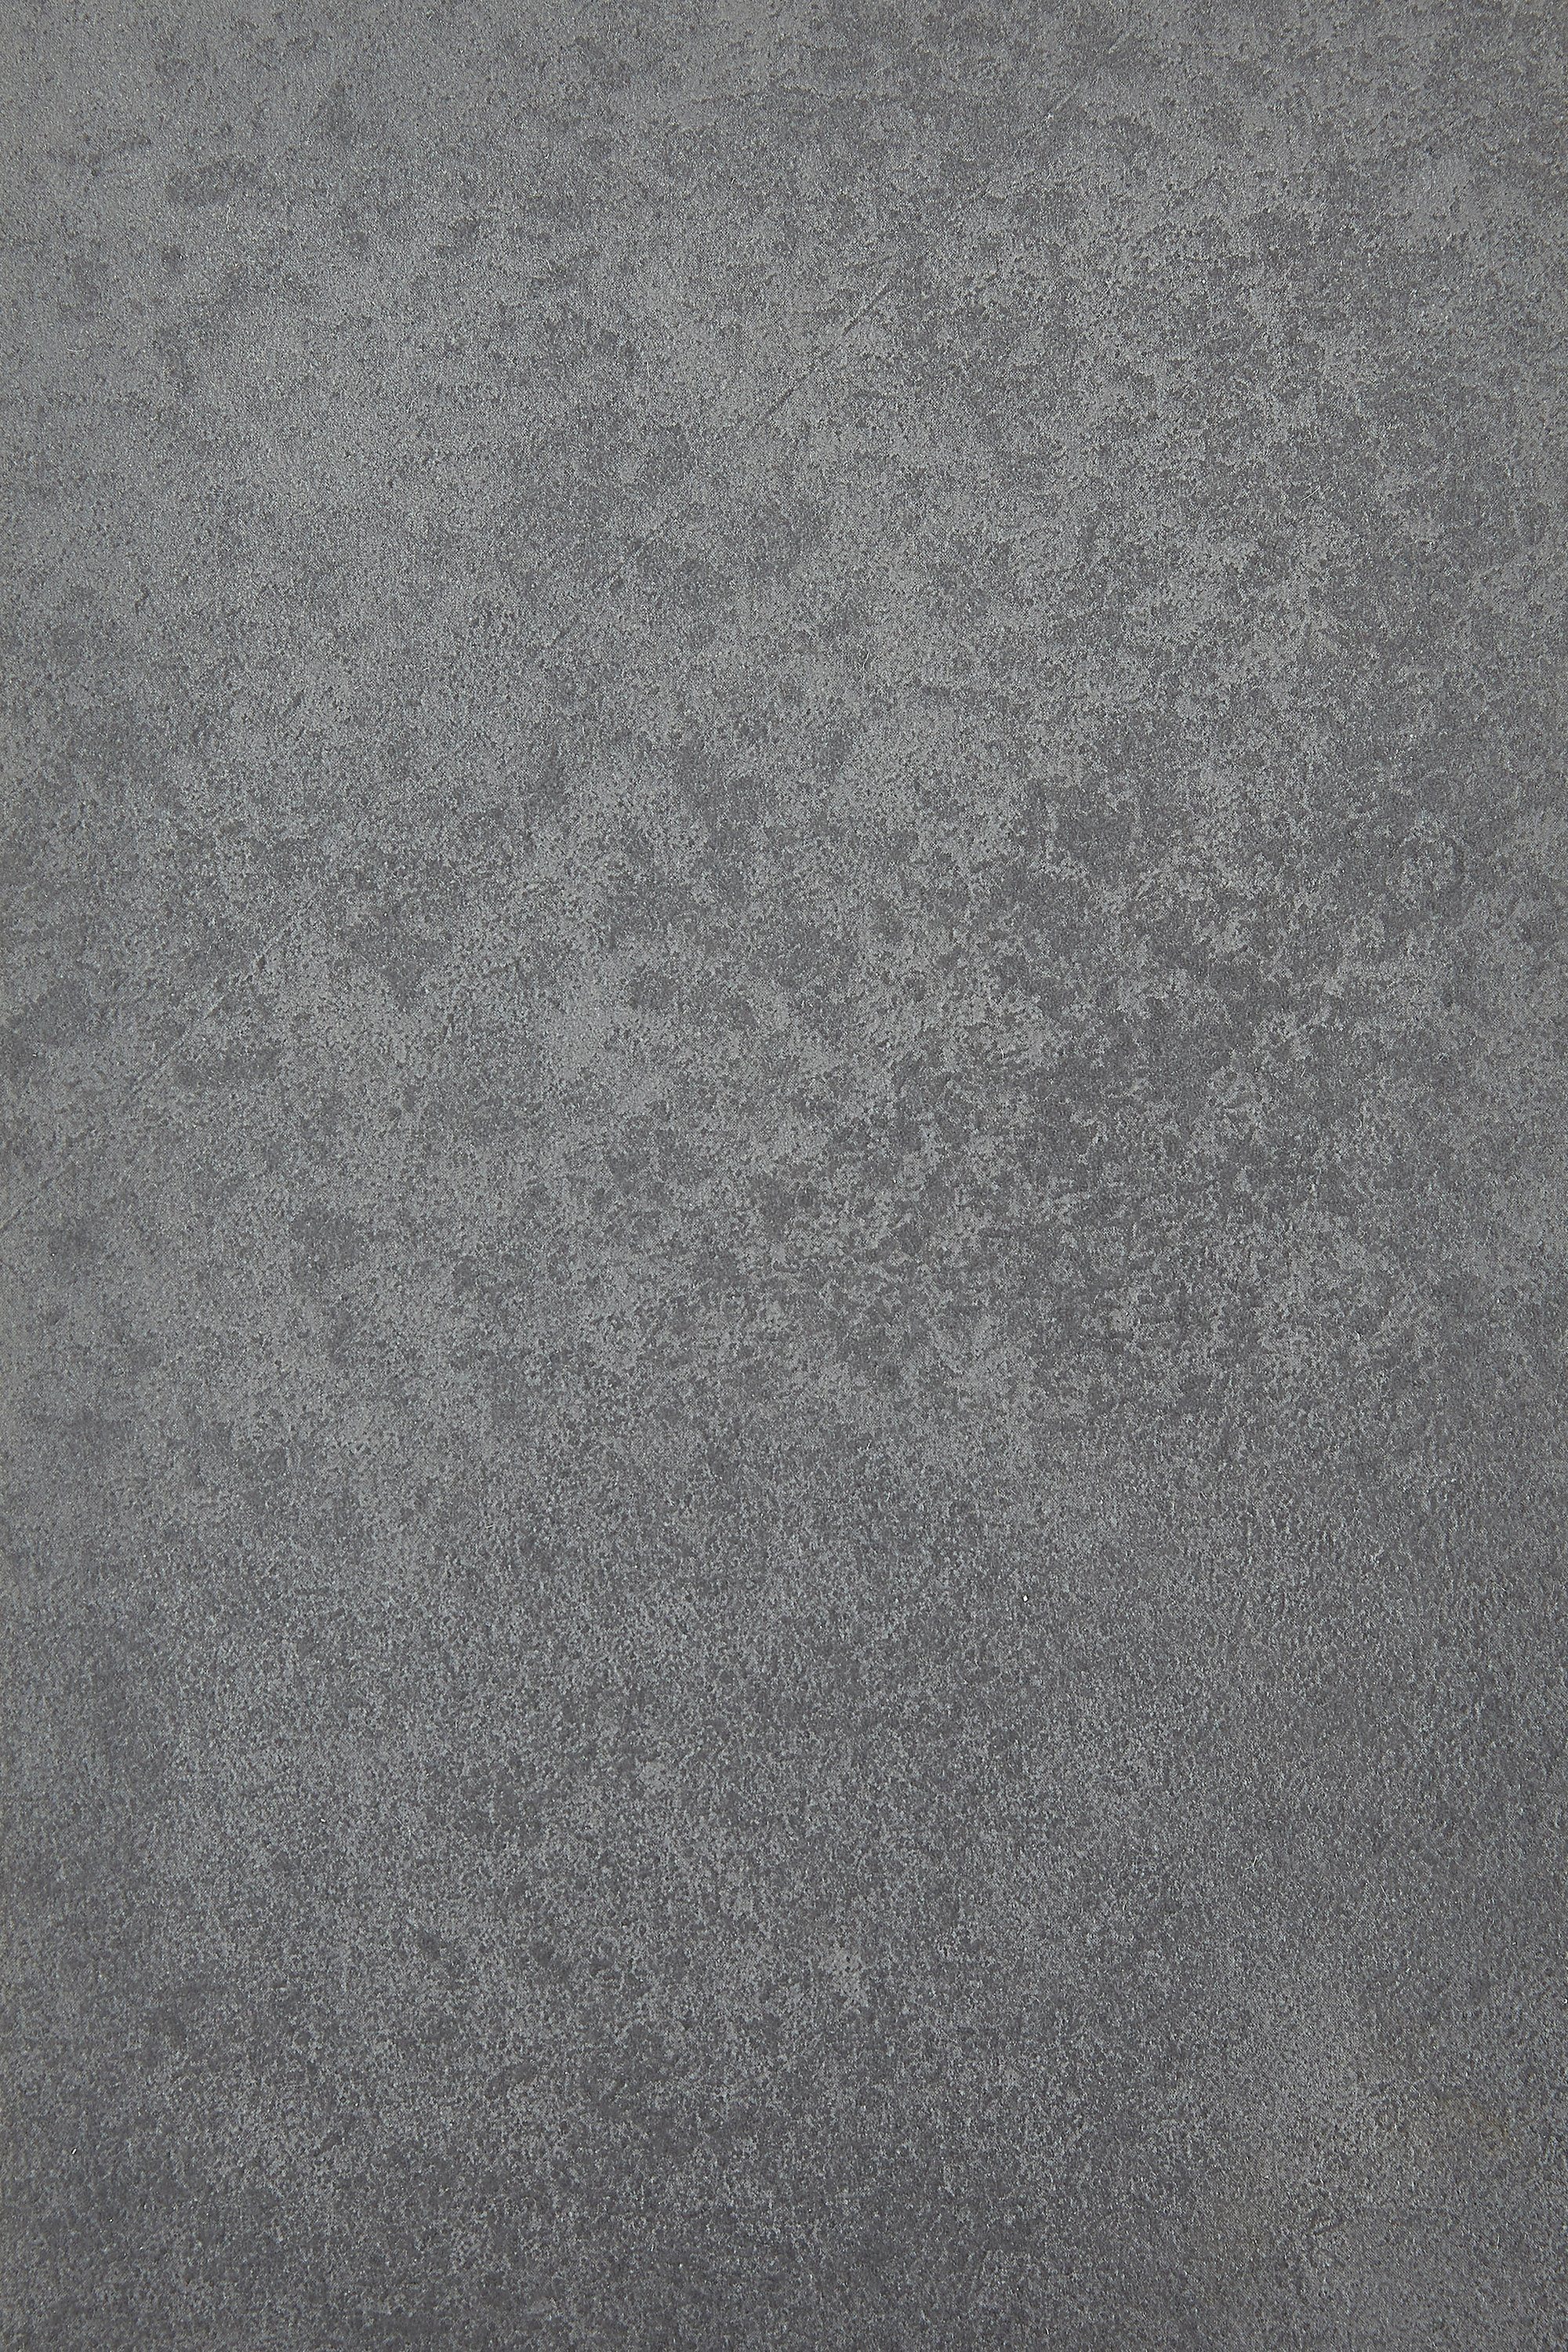 Andiamo Vinylboden Betonoptik Grau und Anthrazit, robust, pflegeleicht, Fußbodenheizung geeignet Allover Grau